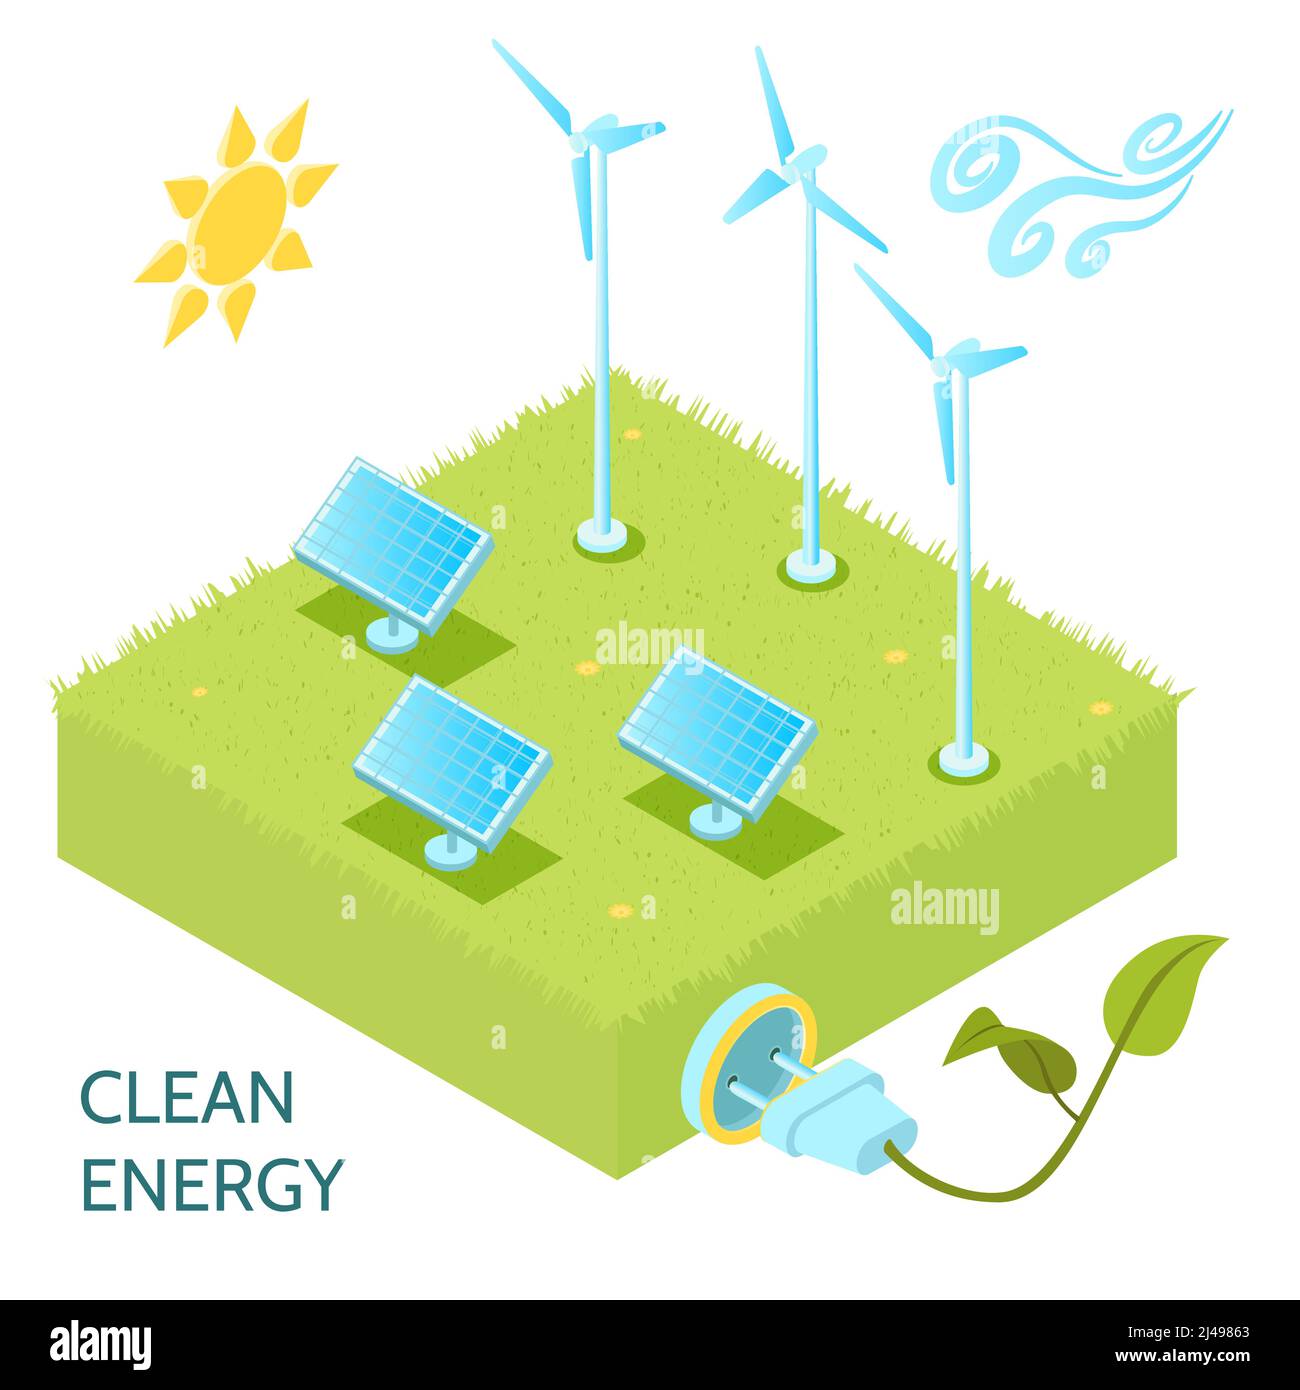 Concetto isometrico dell'energia pulita con simboli dell'energia solare ed eolica illustrazione vettoriale isometrica Illustrazione Vettoriale